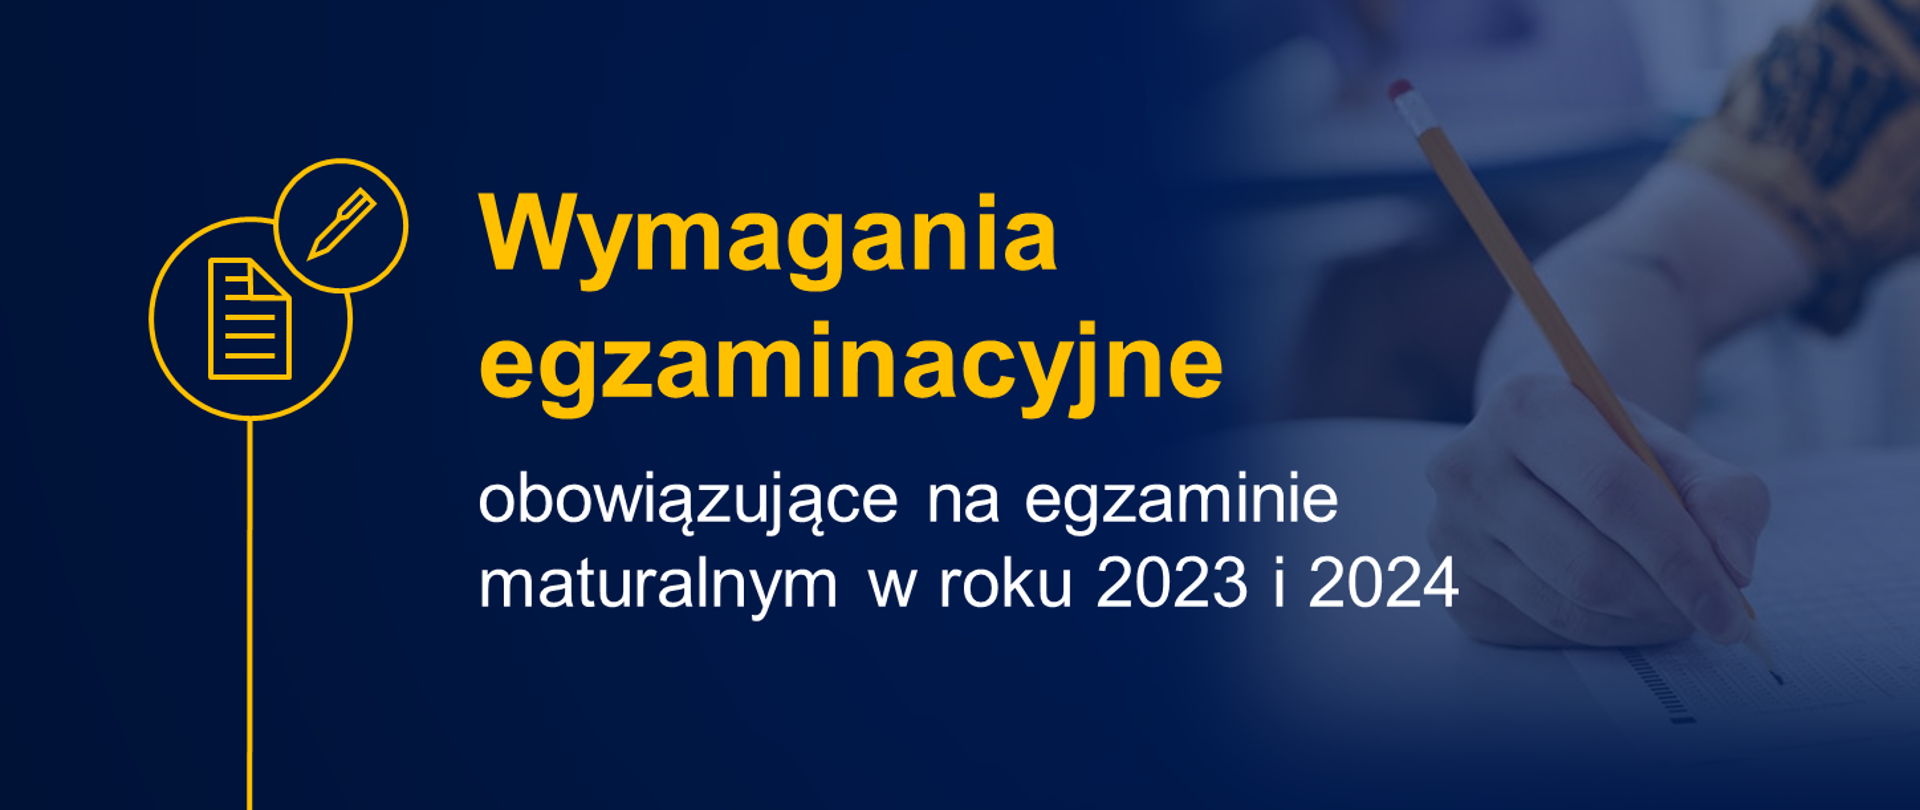 Grafika z tekstem: "Wymagania egzaminacyjne obowiązujące na egzaminie w roku 2023 i 2024"